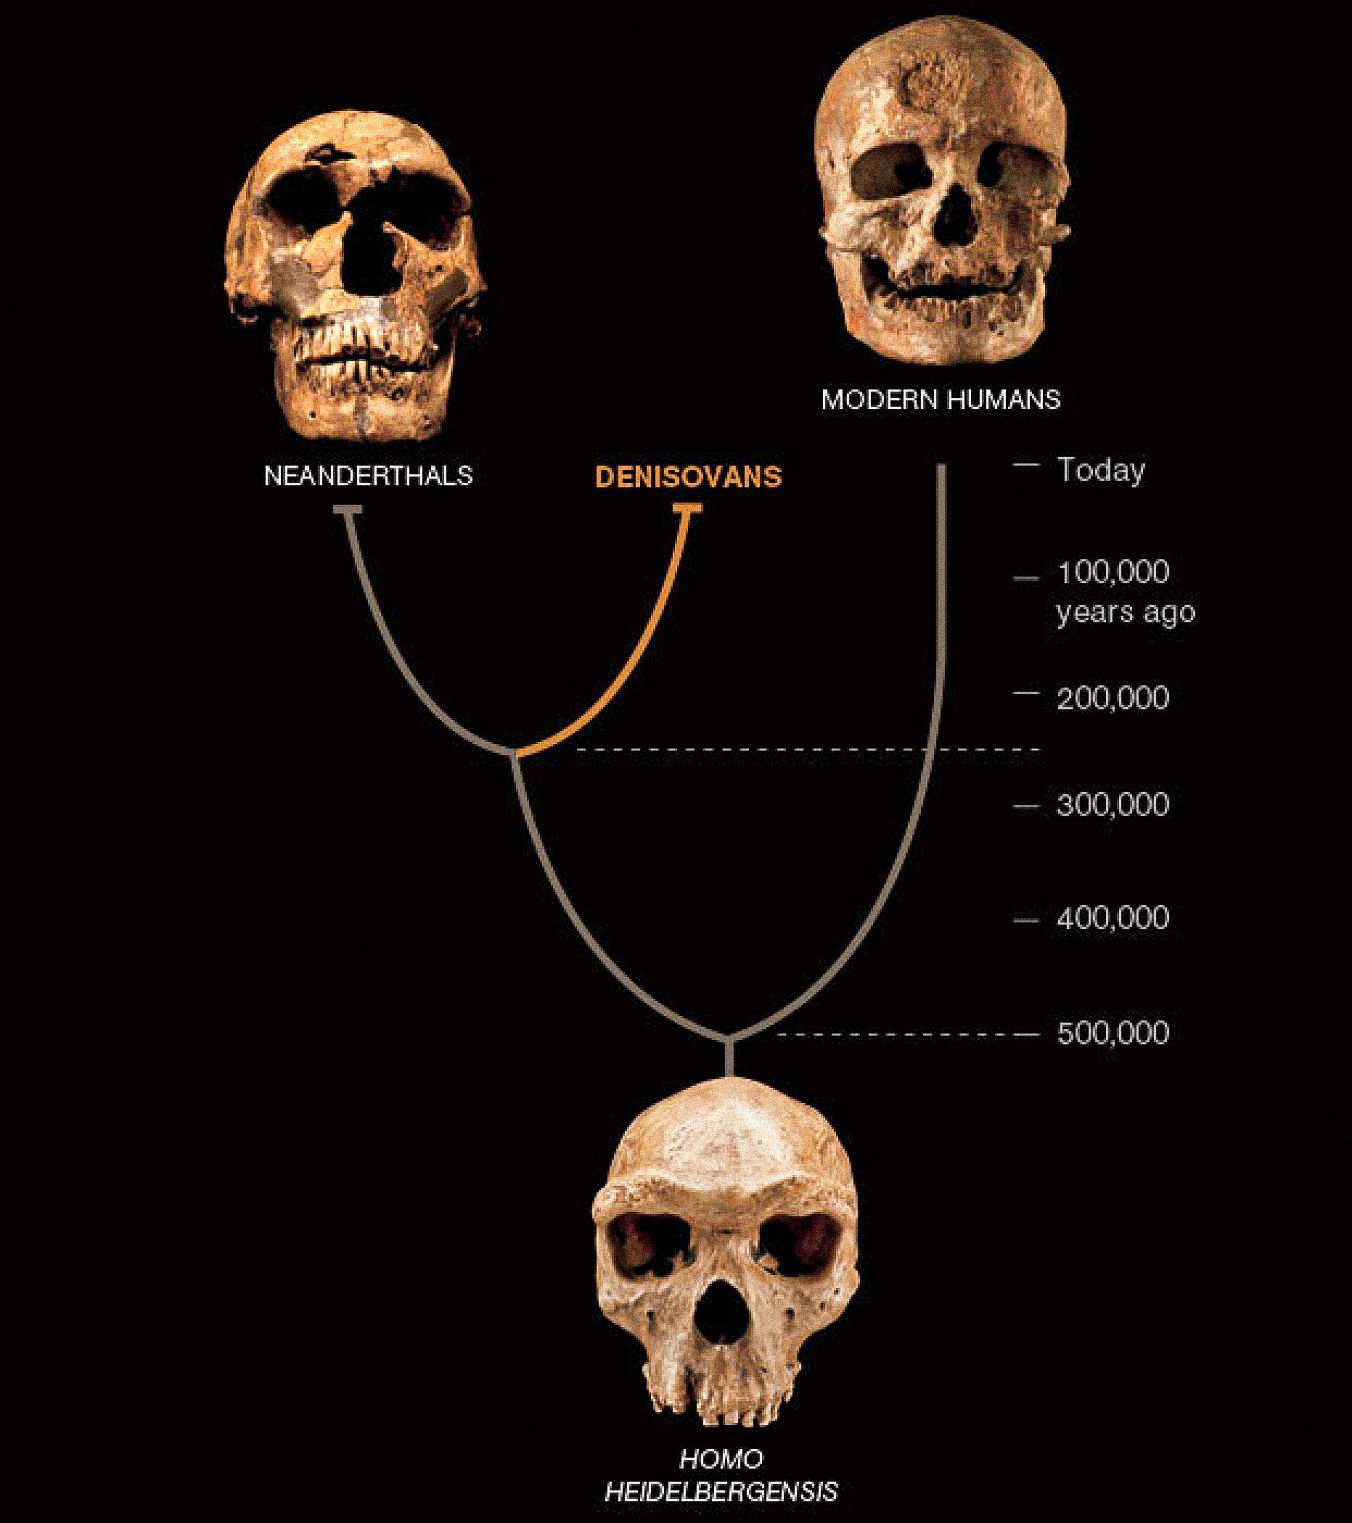 第三种人，称为丹尼索瓦人，似乎与尼​​安德特人和早期现代人在亚洲共存。 后两者是从丰富的化石和文物中得知的。 迄今为止，丹尼索瓦人的定义仅由来自一个骨片和两颗牙齿的 DNA 定义——但它揭示了人类故事的新转折。